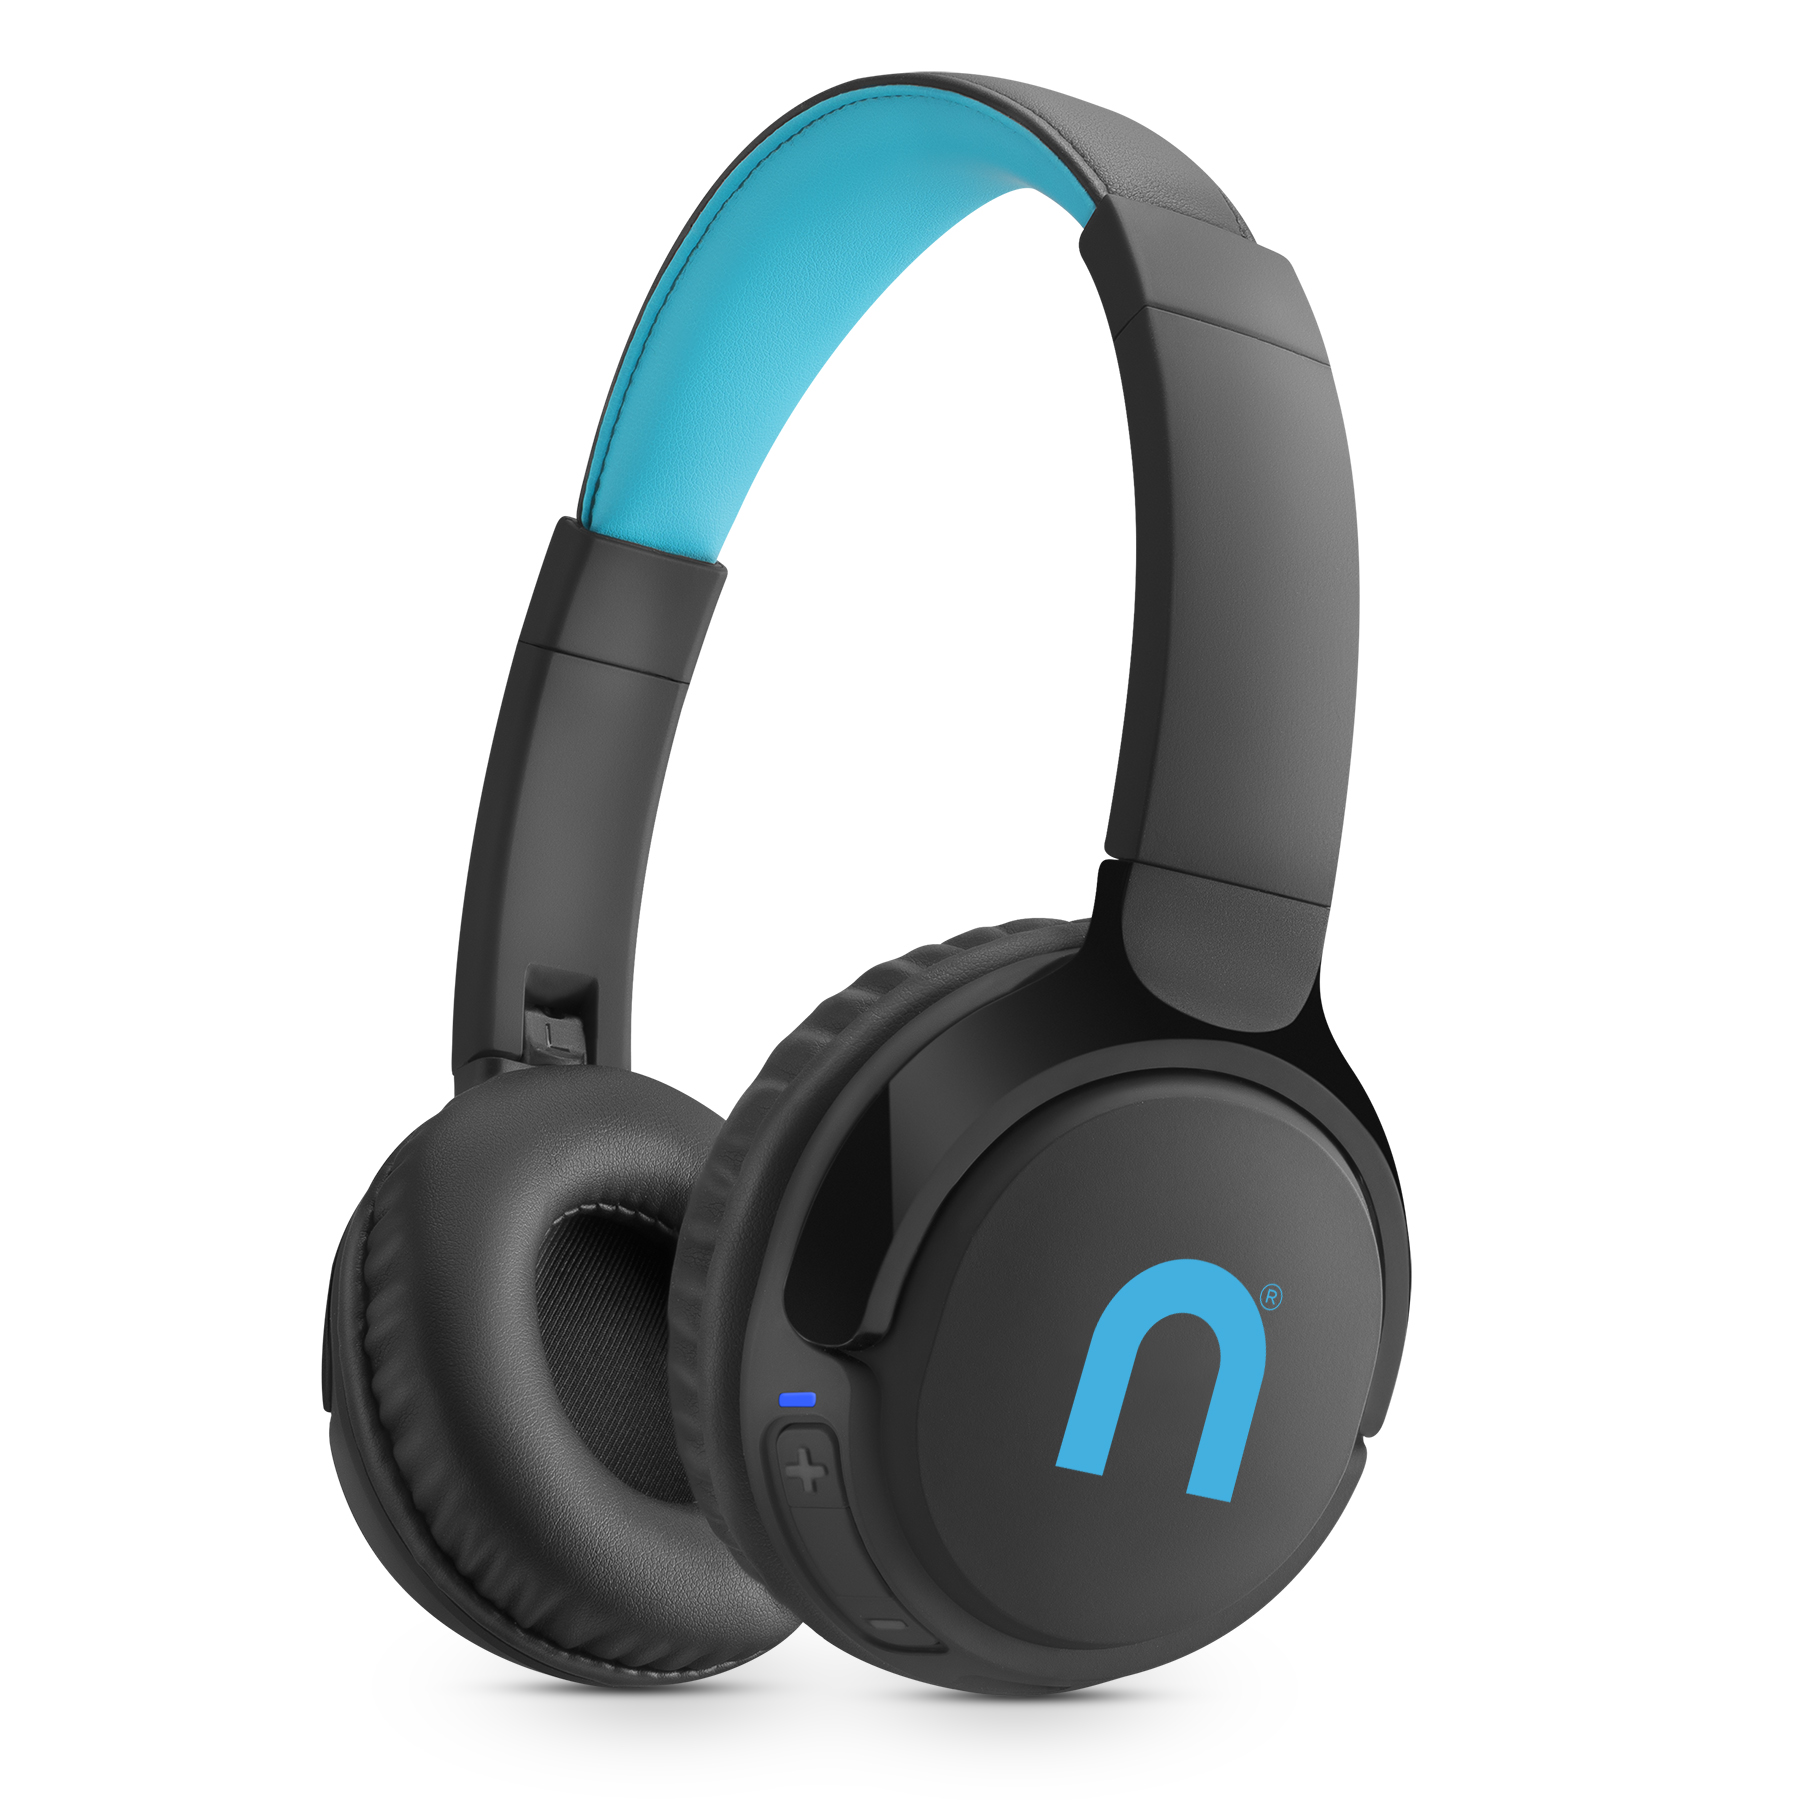 Casti audio over-ear Niceboy HIVE Prodigy 3 Max, Wireless, Bluetooth 5.3, mod Bass Boost, Microfon, pliabile, asistent vocal, aplicatie mobila, IP54, incarcare rapida, autonomie de pana la 42 ore, negru/albastru